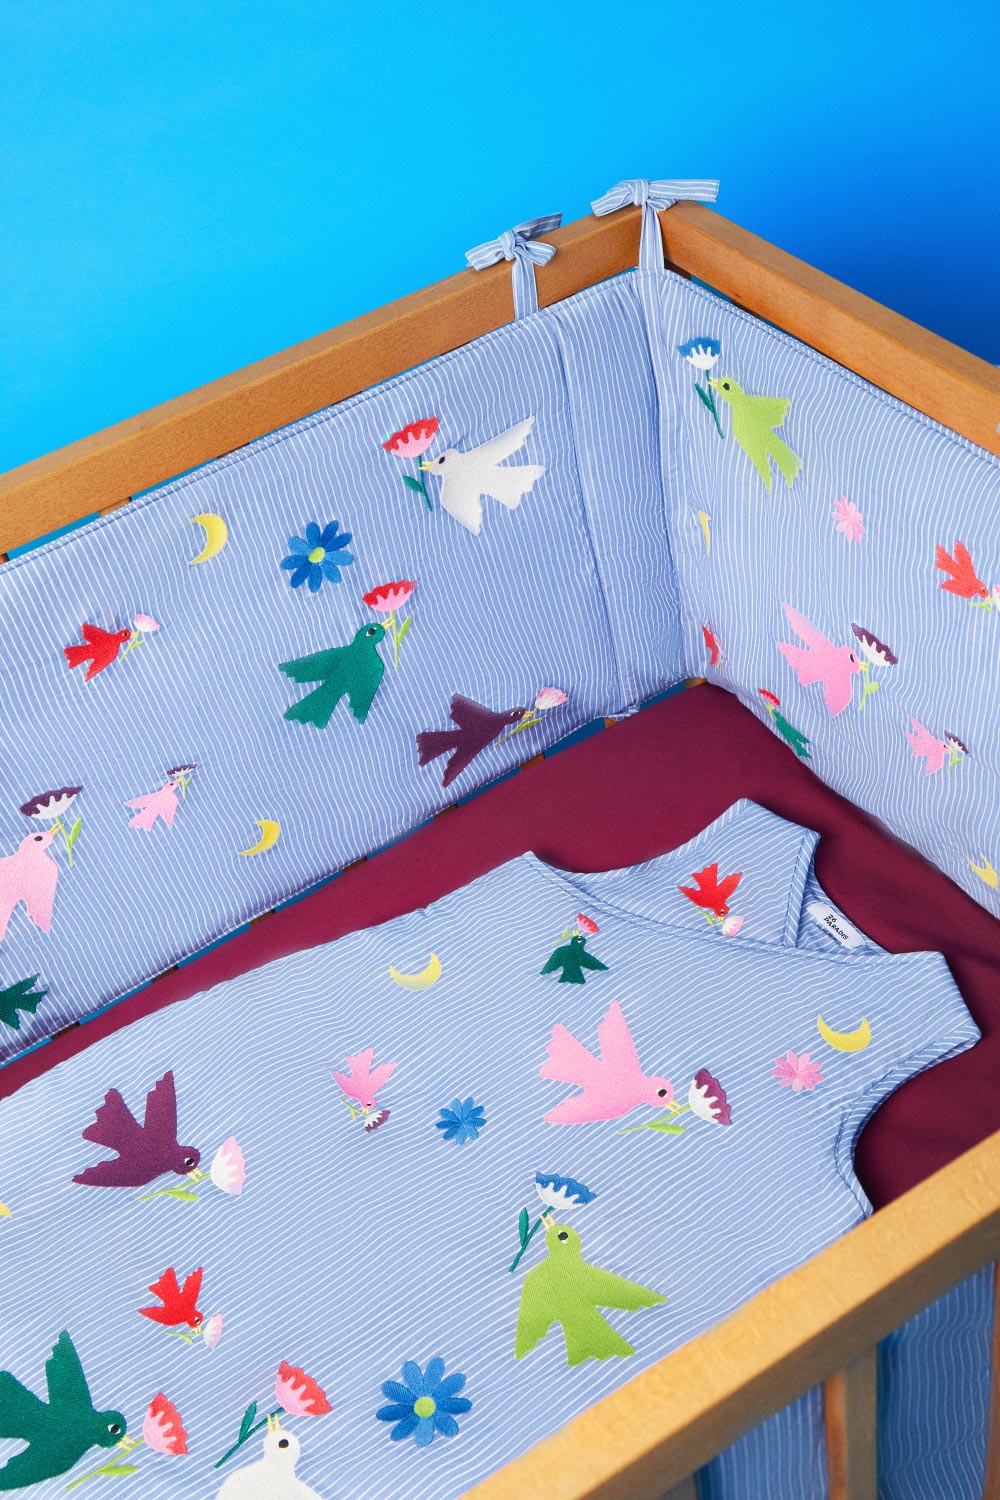  gigoteuse et tour de lit en coton doux certifié OEKO-TEX. Broderie oiseaux, fleurs et lune pour de doux rêves pour votre bébé. 26 PARADIS